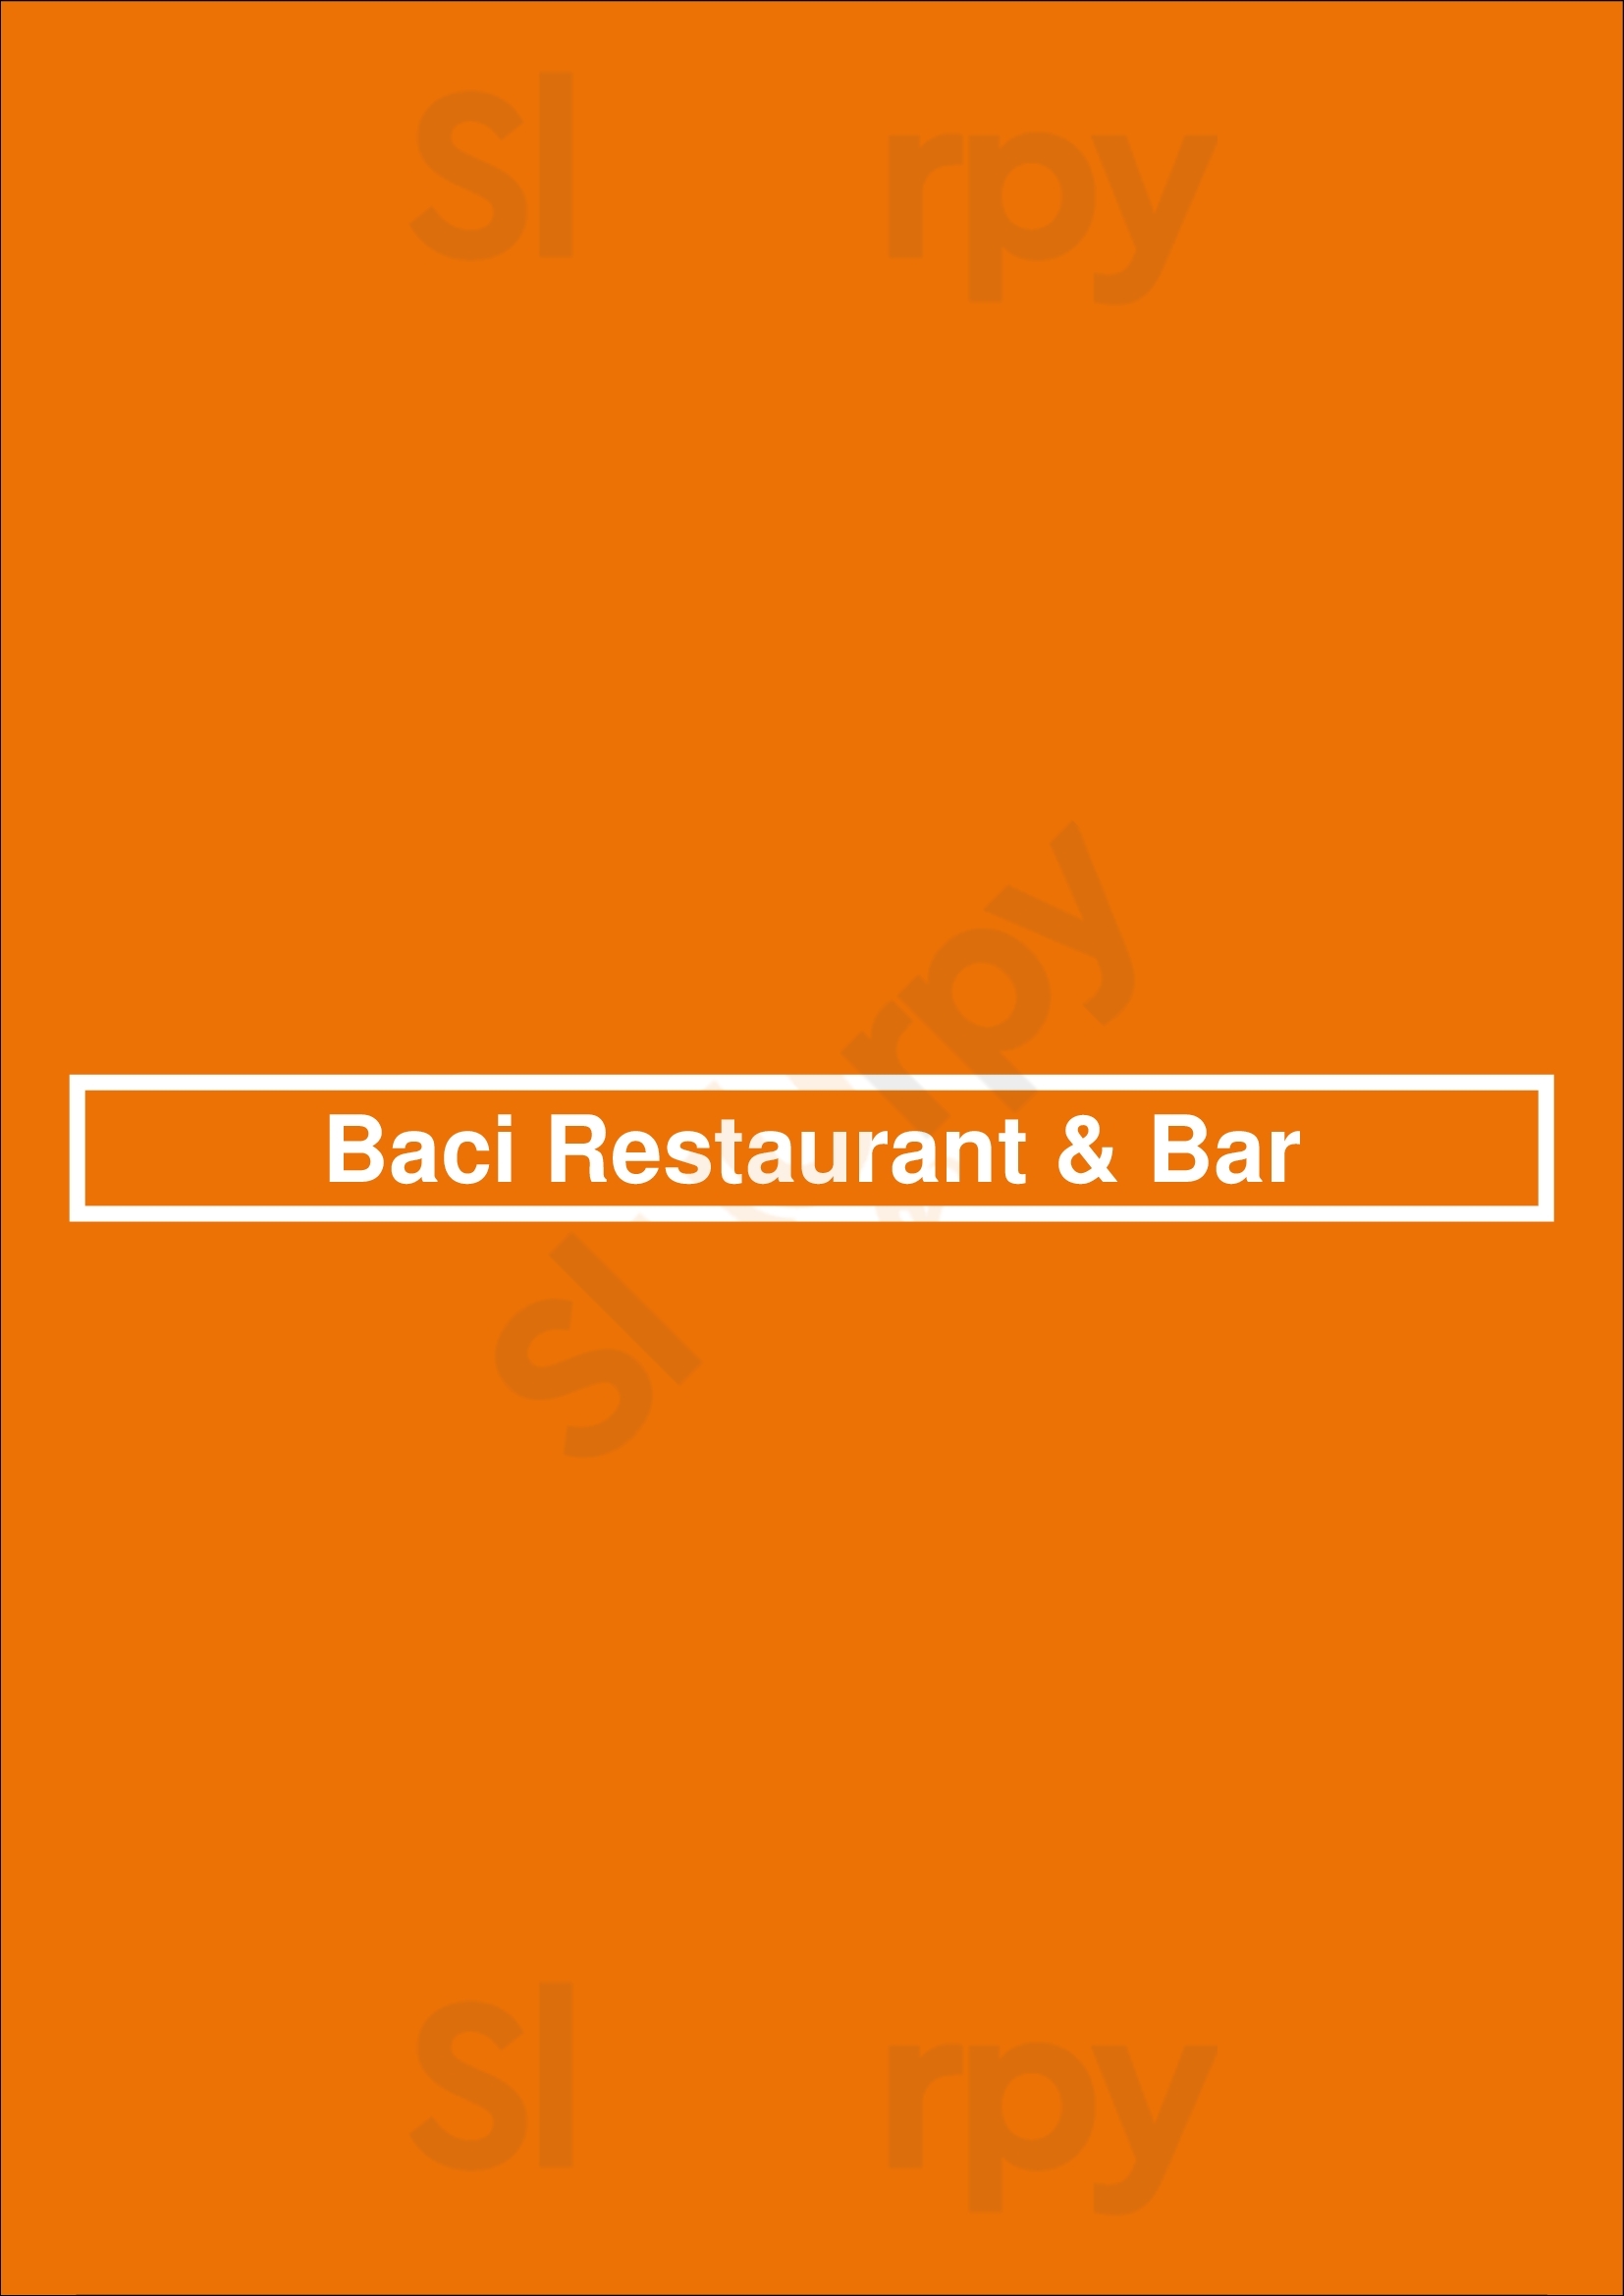 Baci Restaurant & Bar Sandusky Menu - 1